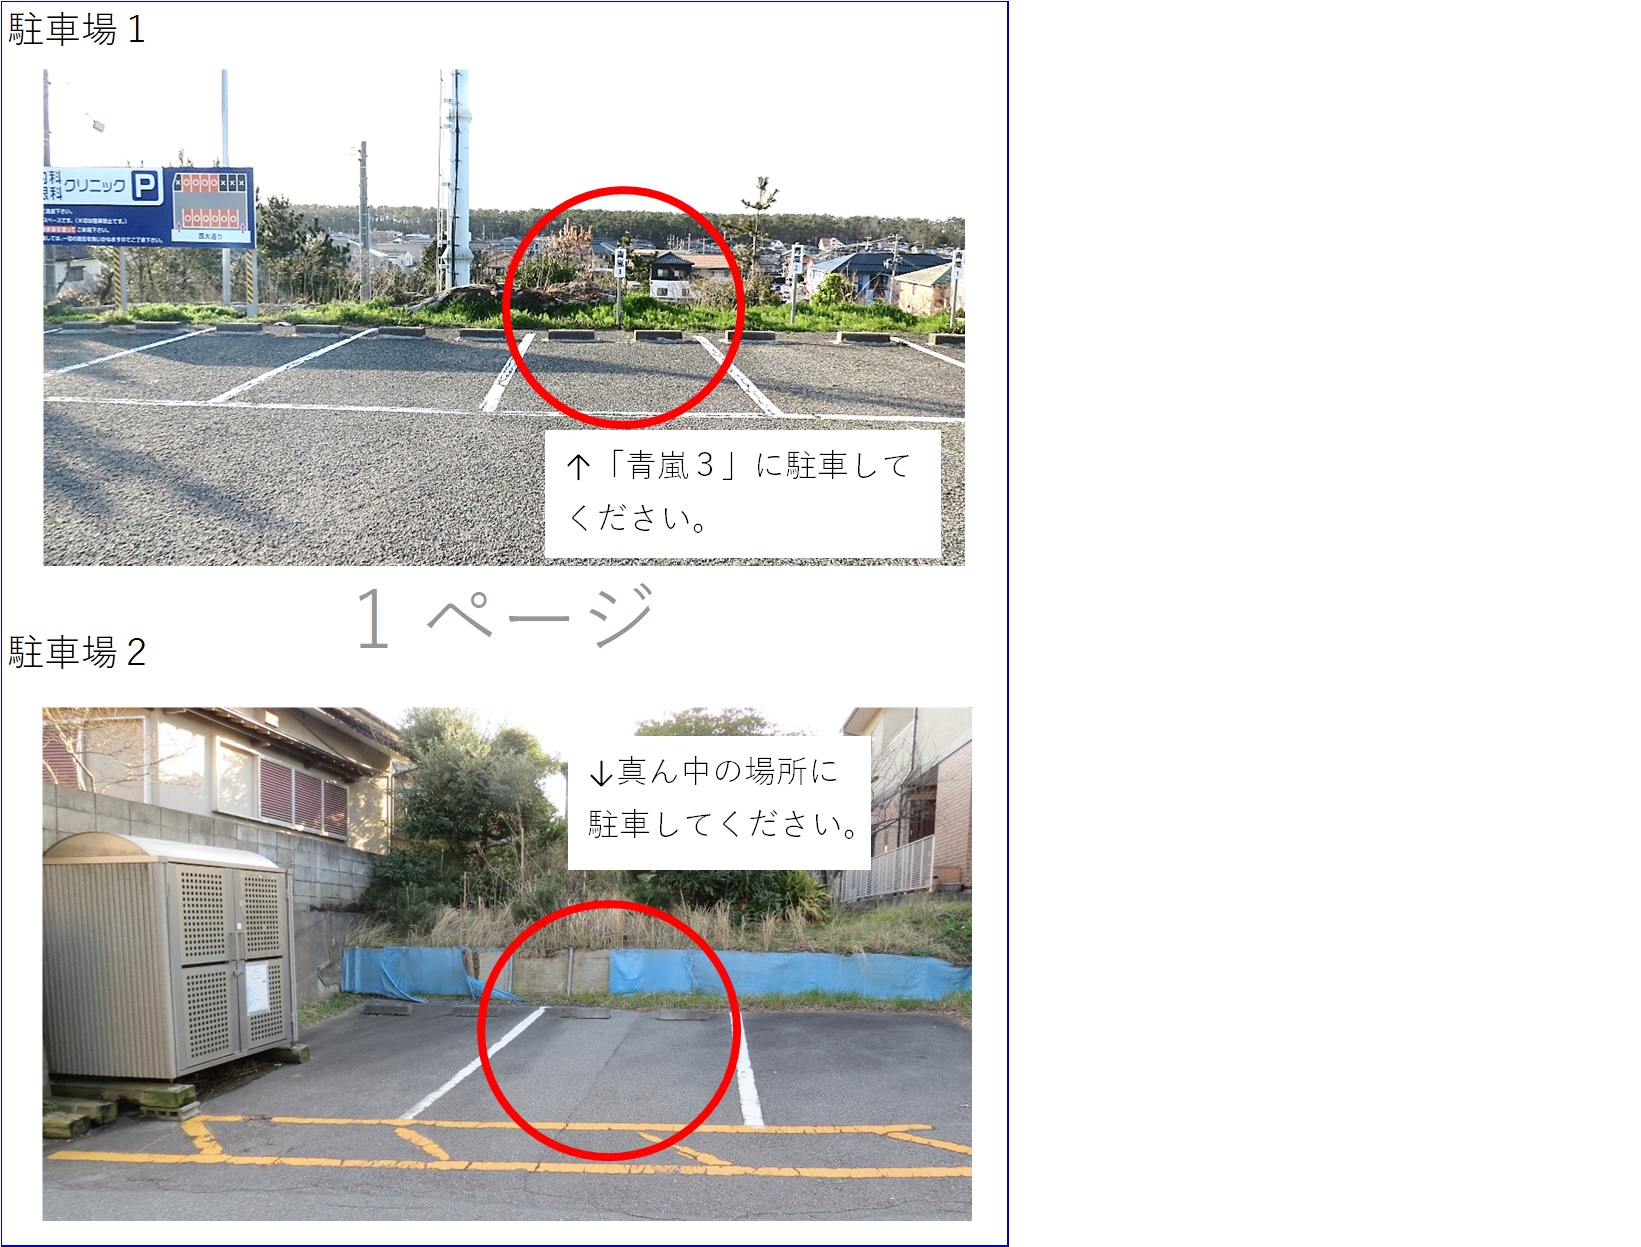 菊田頼司法律事務所（新潟市西区）専用駐車場